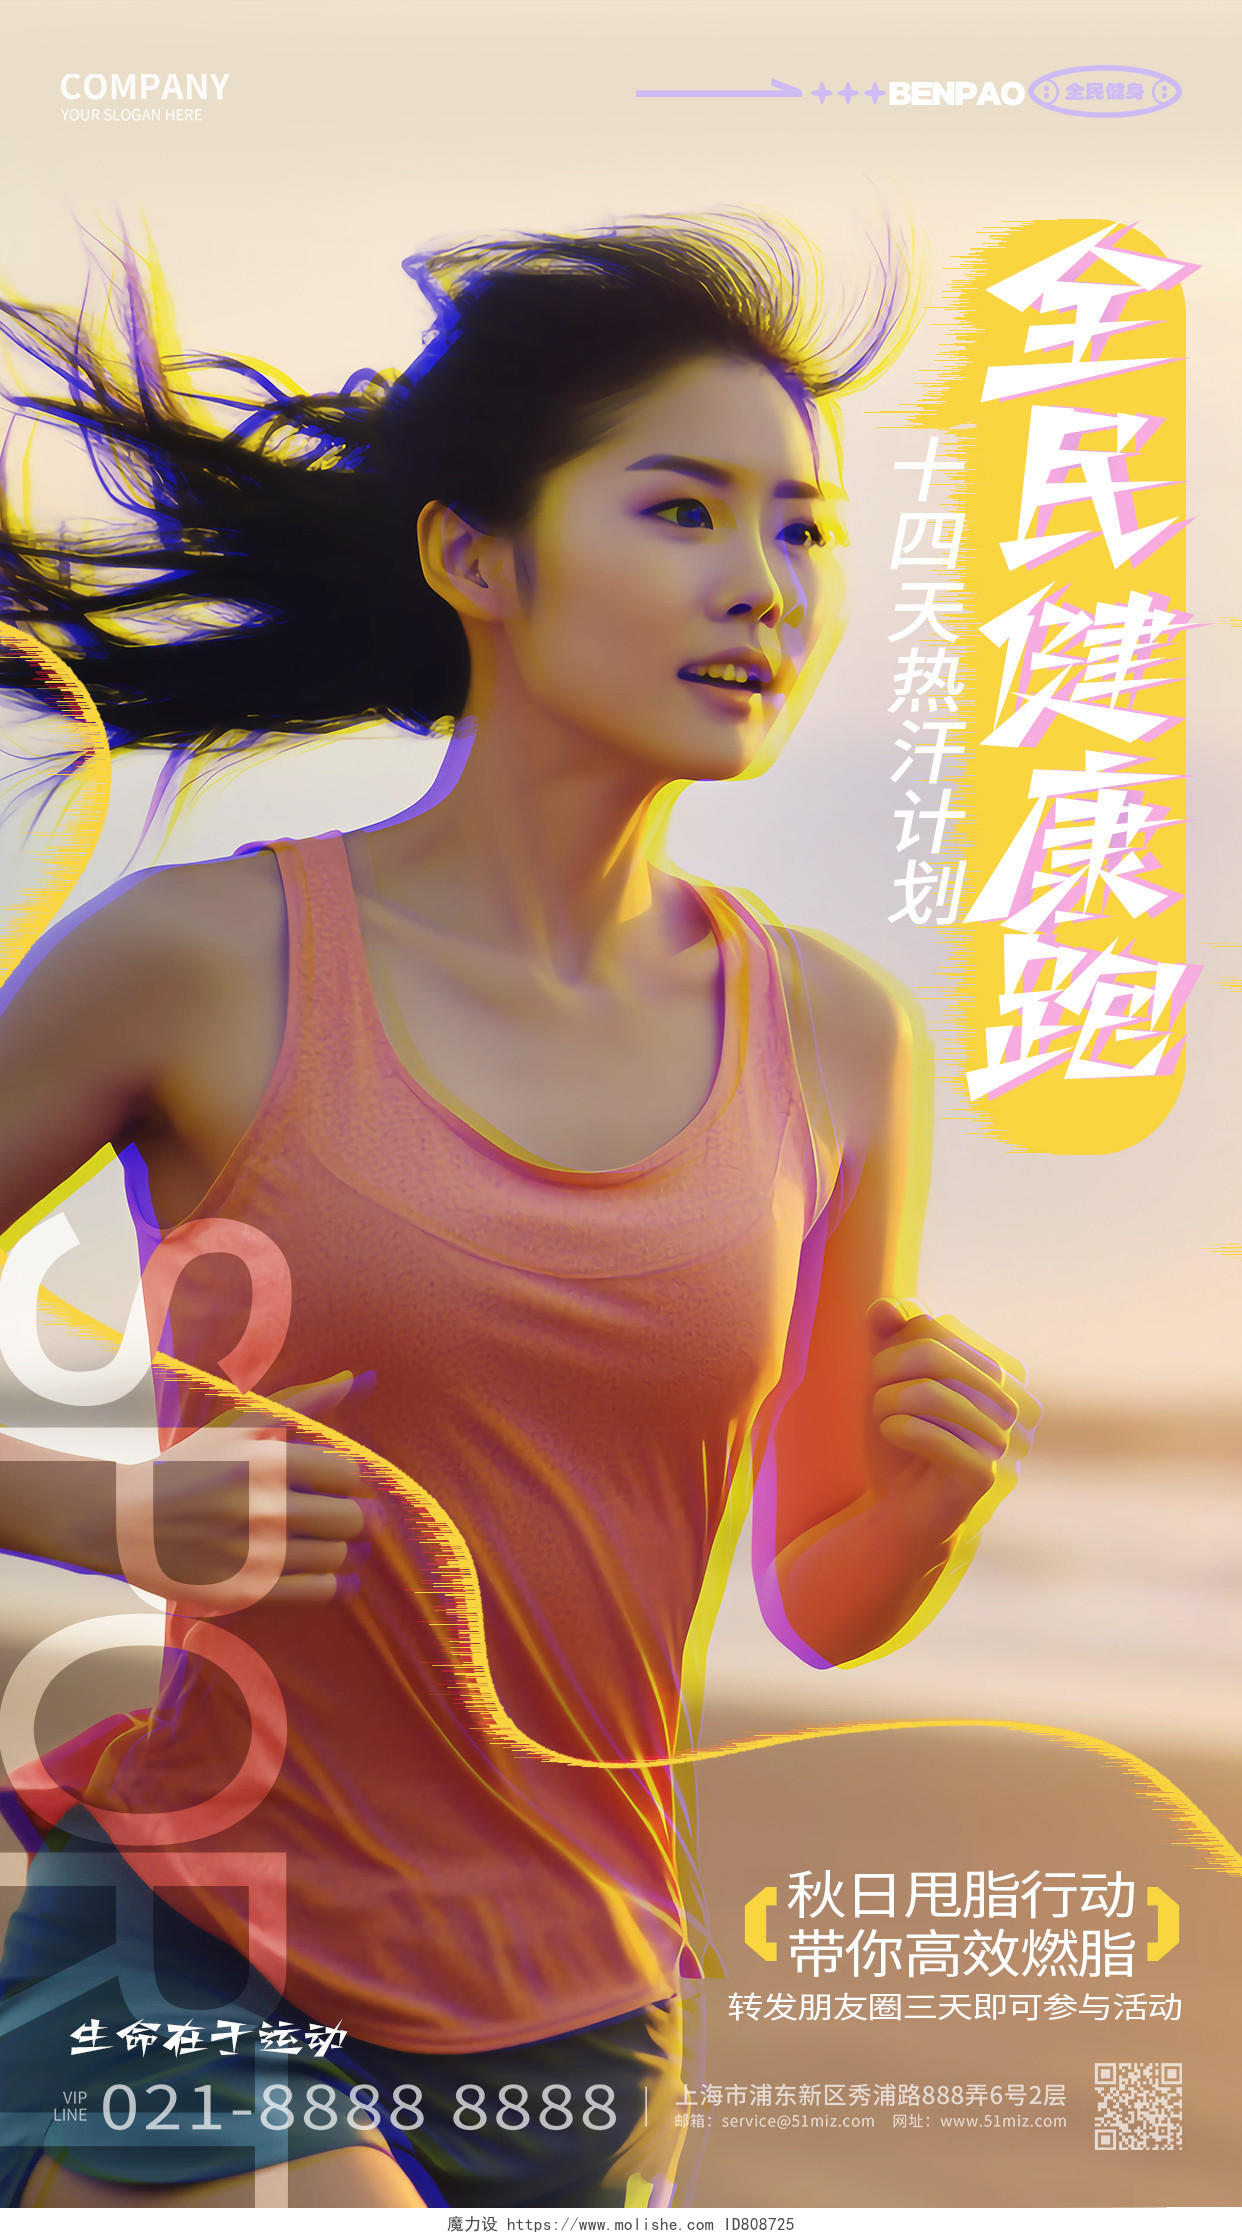 创意时尚全民健康跑运动健身手机海报AI